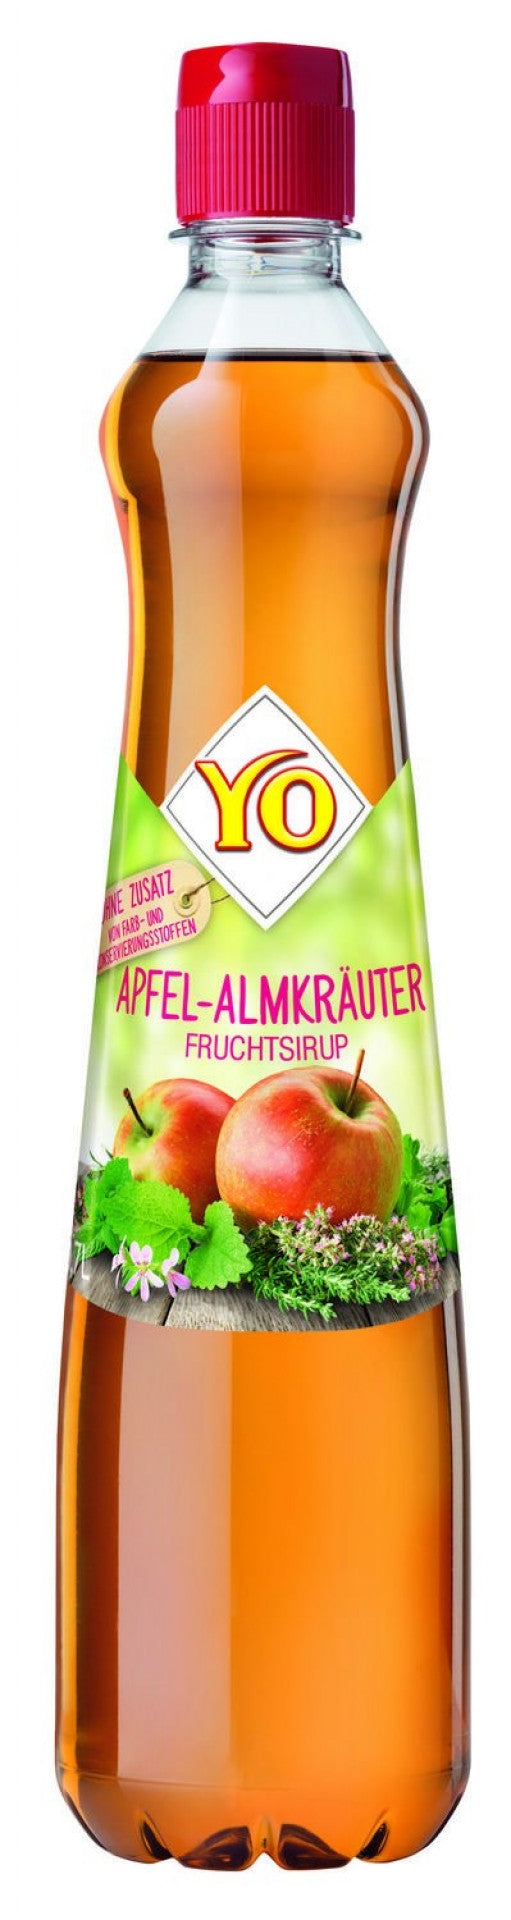 YO Sirup Apfel-Almkräuter